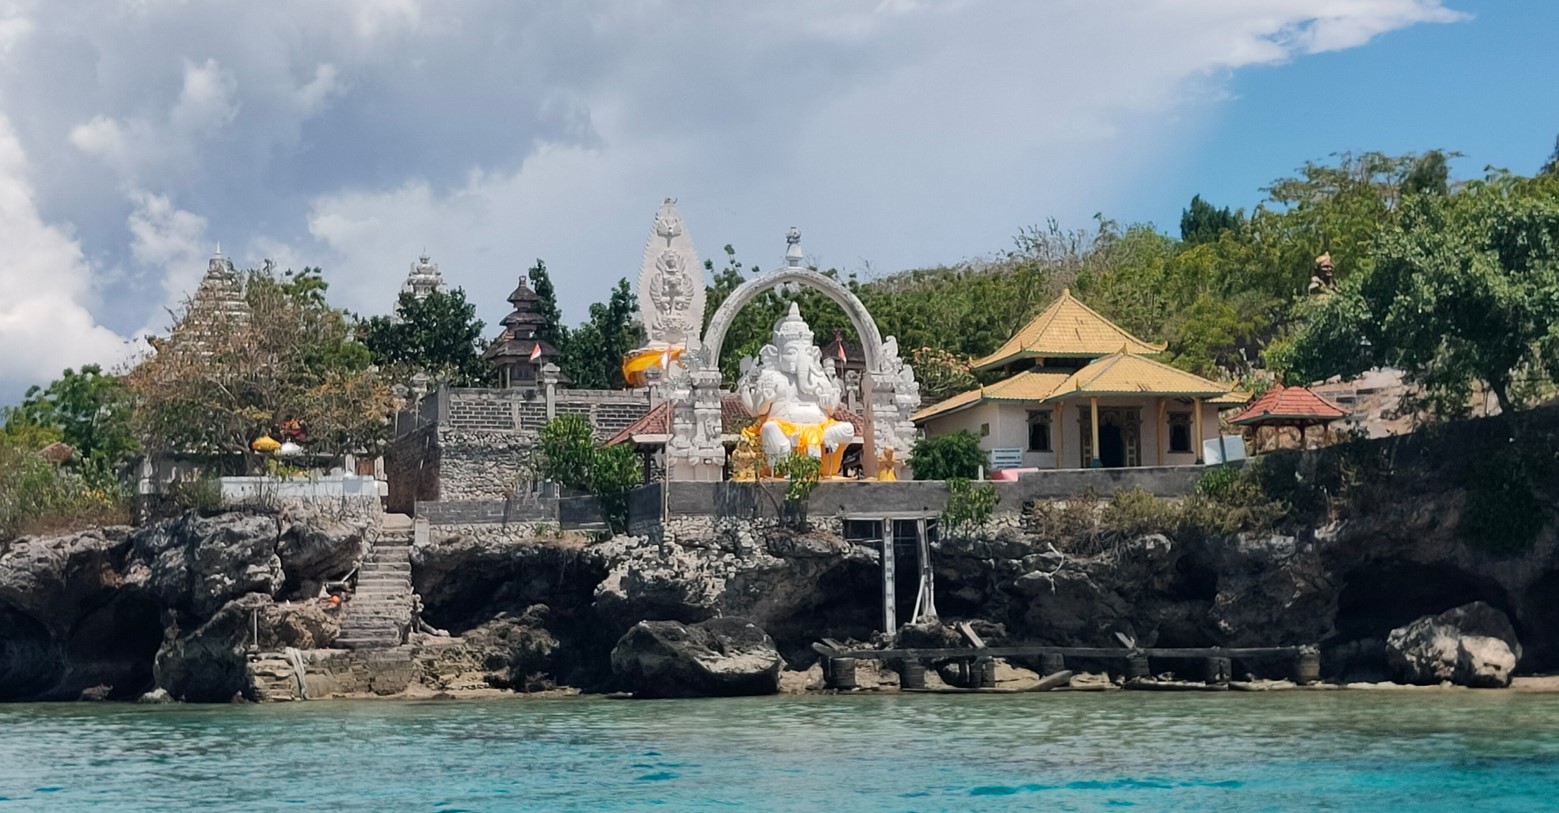 Daya Tarik Objek Wisata Pulau Menjangan di Gerokgak Buleleng Bali